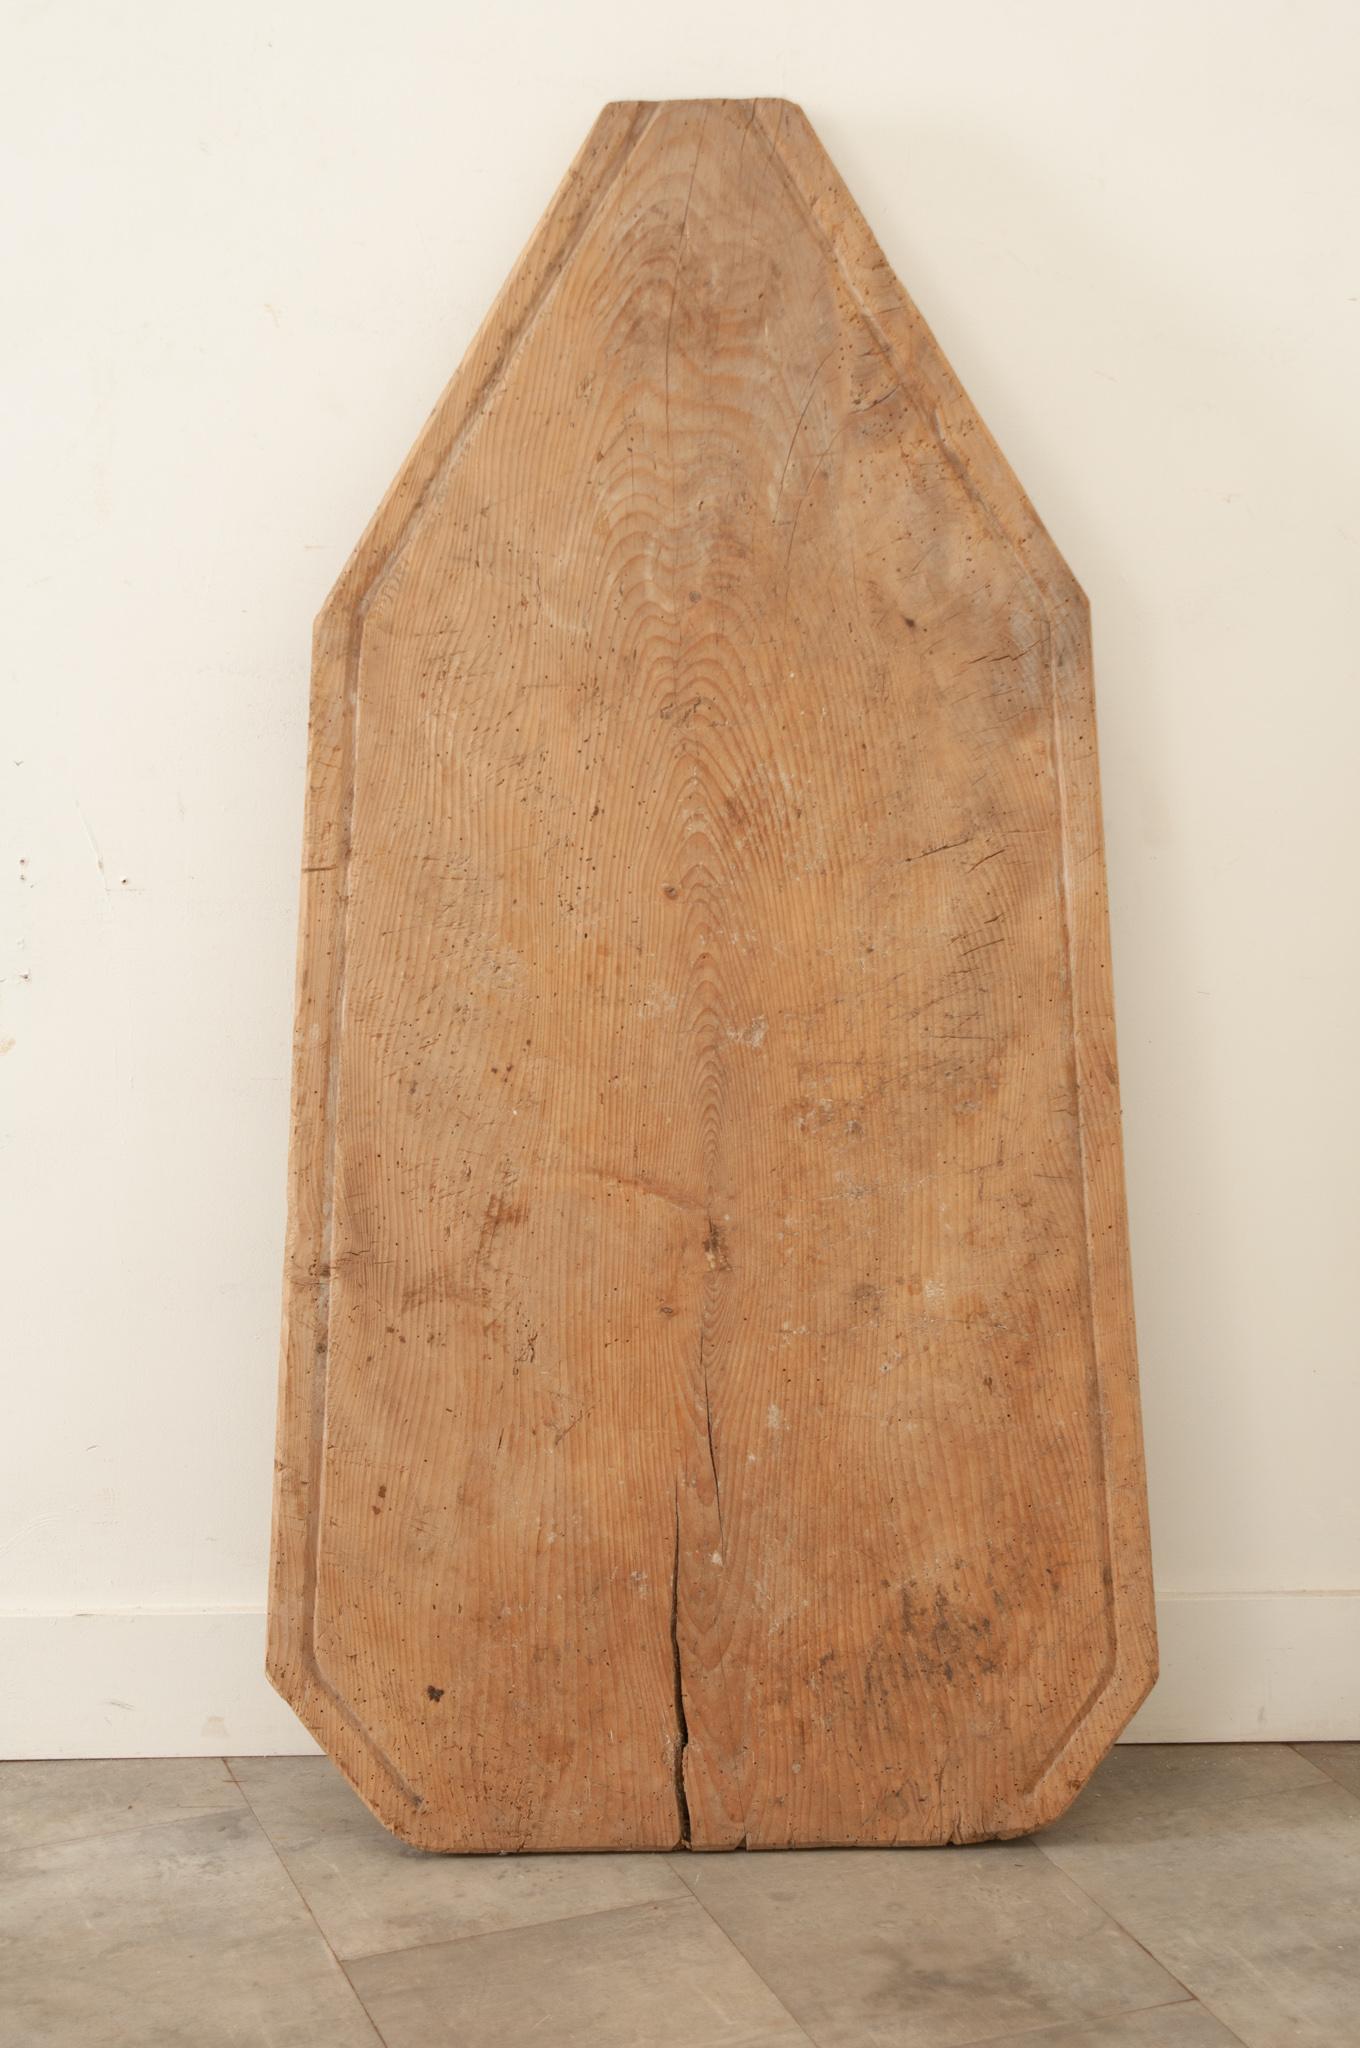 Ein großes französisches Käseabtropfbrett aus dem frühen 19. Jahrhundert, handgefertigt in Frankreich um 1820. Dieses Brett aus massivem Kiefernholz mit einem flachen Rand diente dazu, die Molke aus den Käsen ablaufen zu lassen, während sie